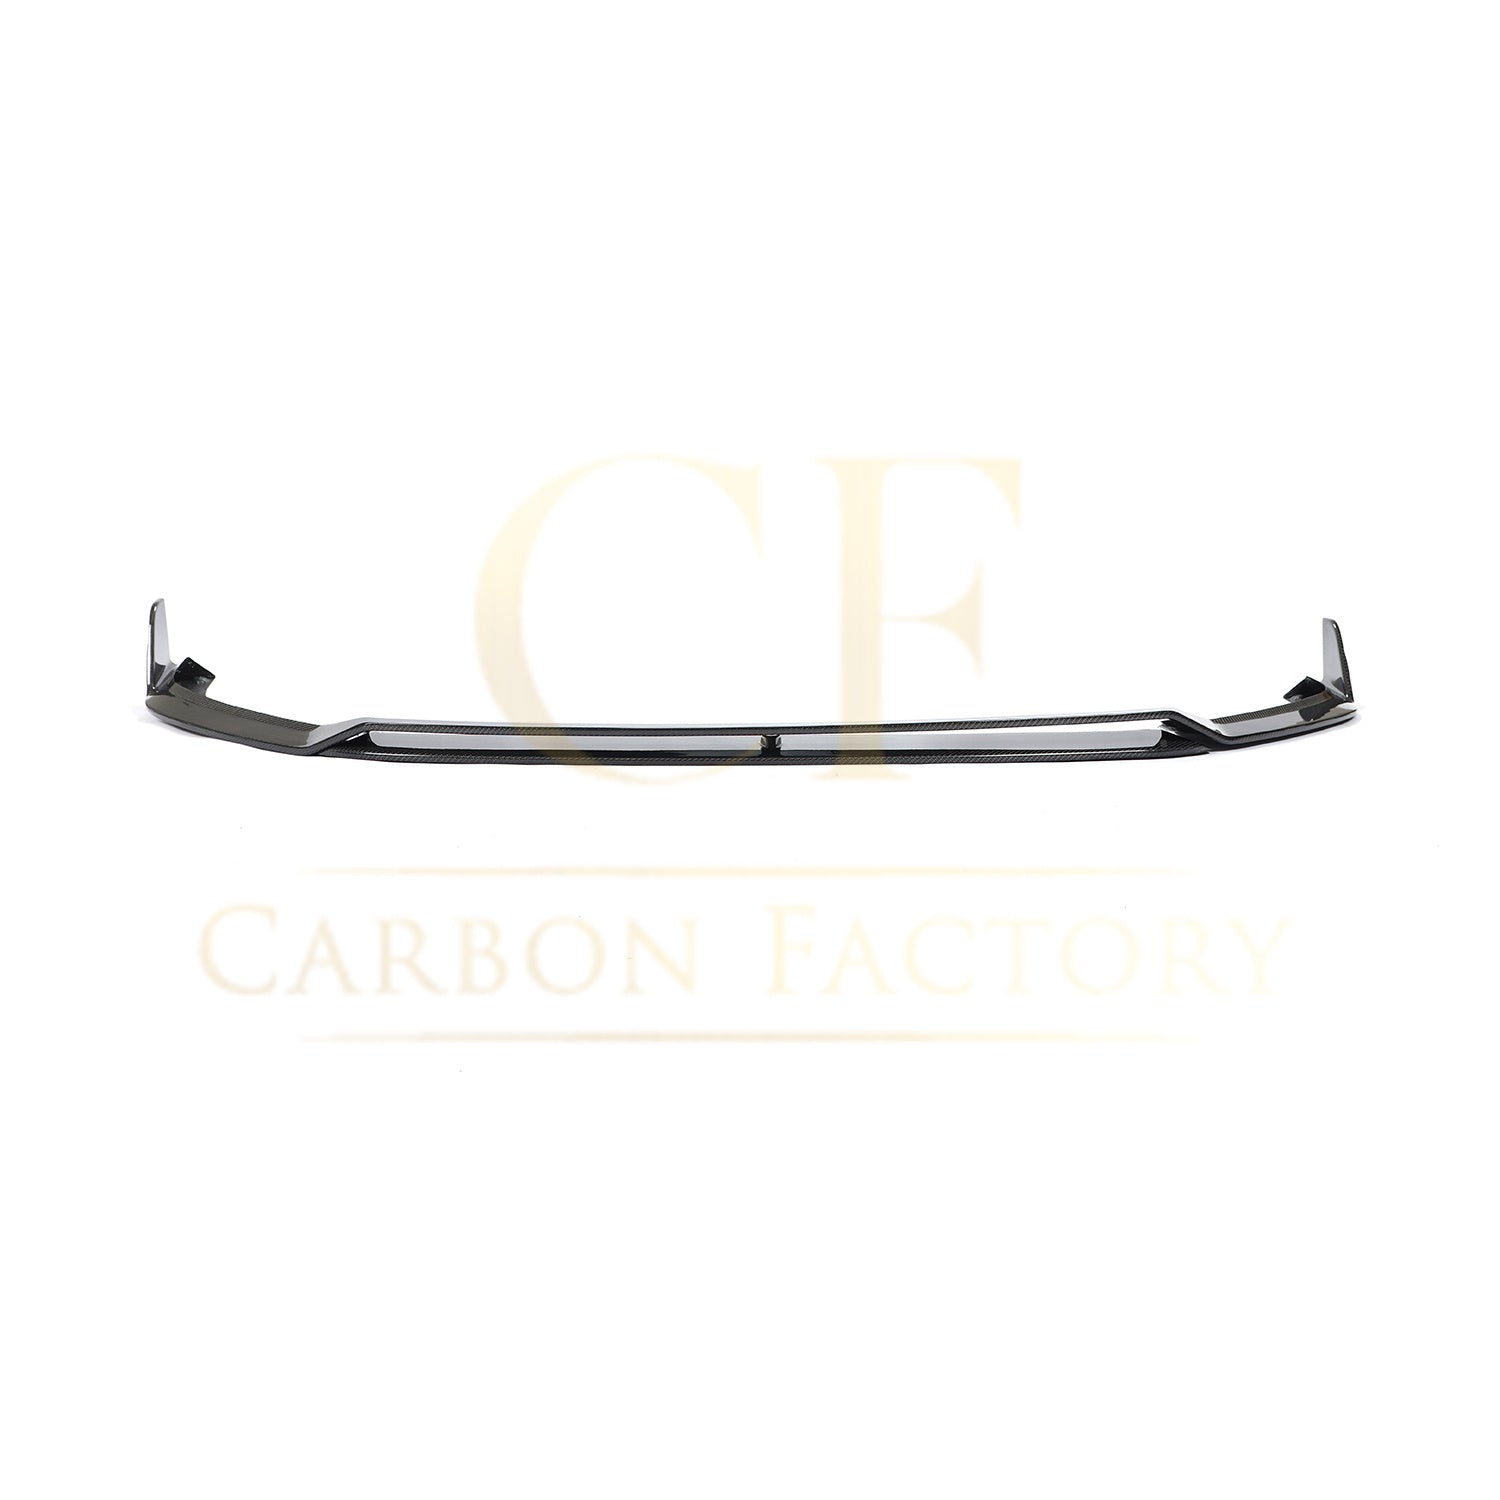 VW Golf MK7.5 GTI MK Style Carbon Fibre Front Splitter 18-20-Carbon Factory